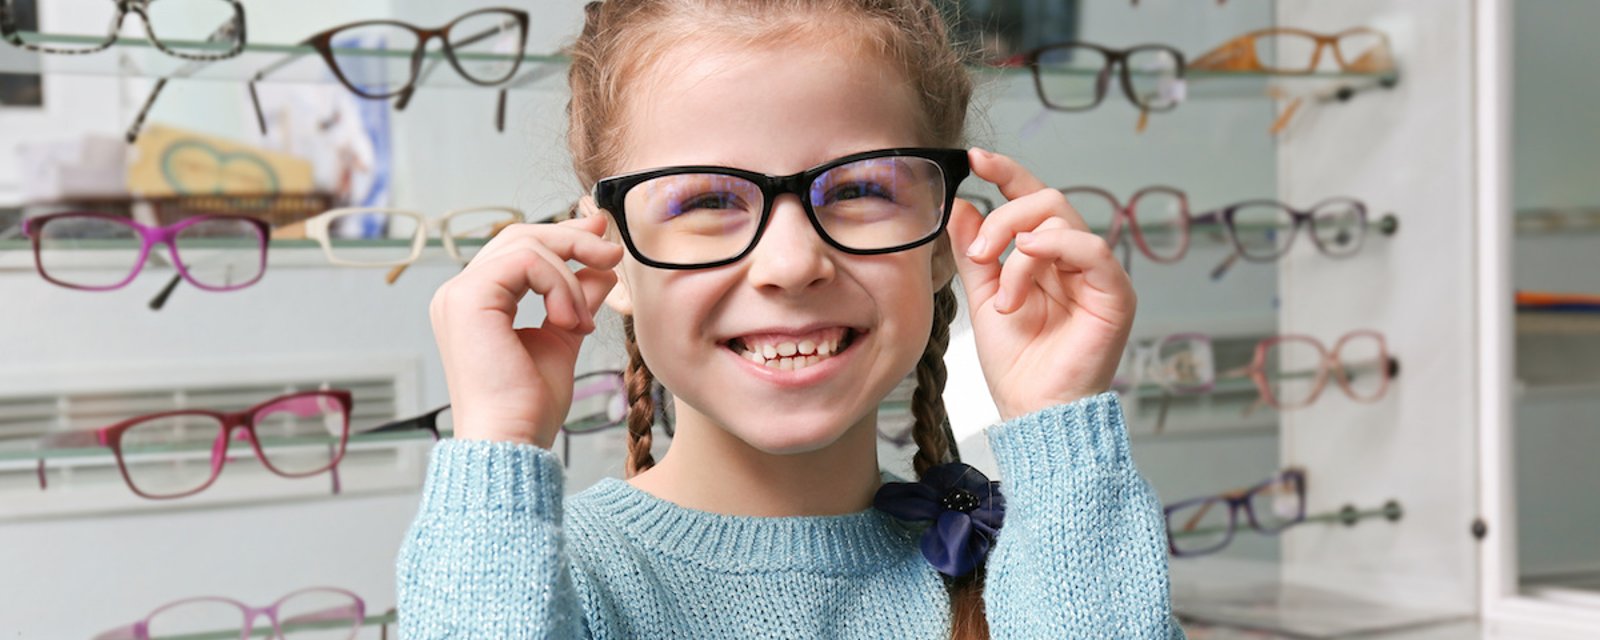 Si votre enfant porte des lunettes, le gouvernement du Québec vous aidera.